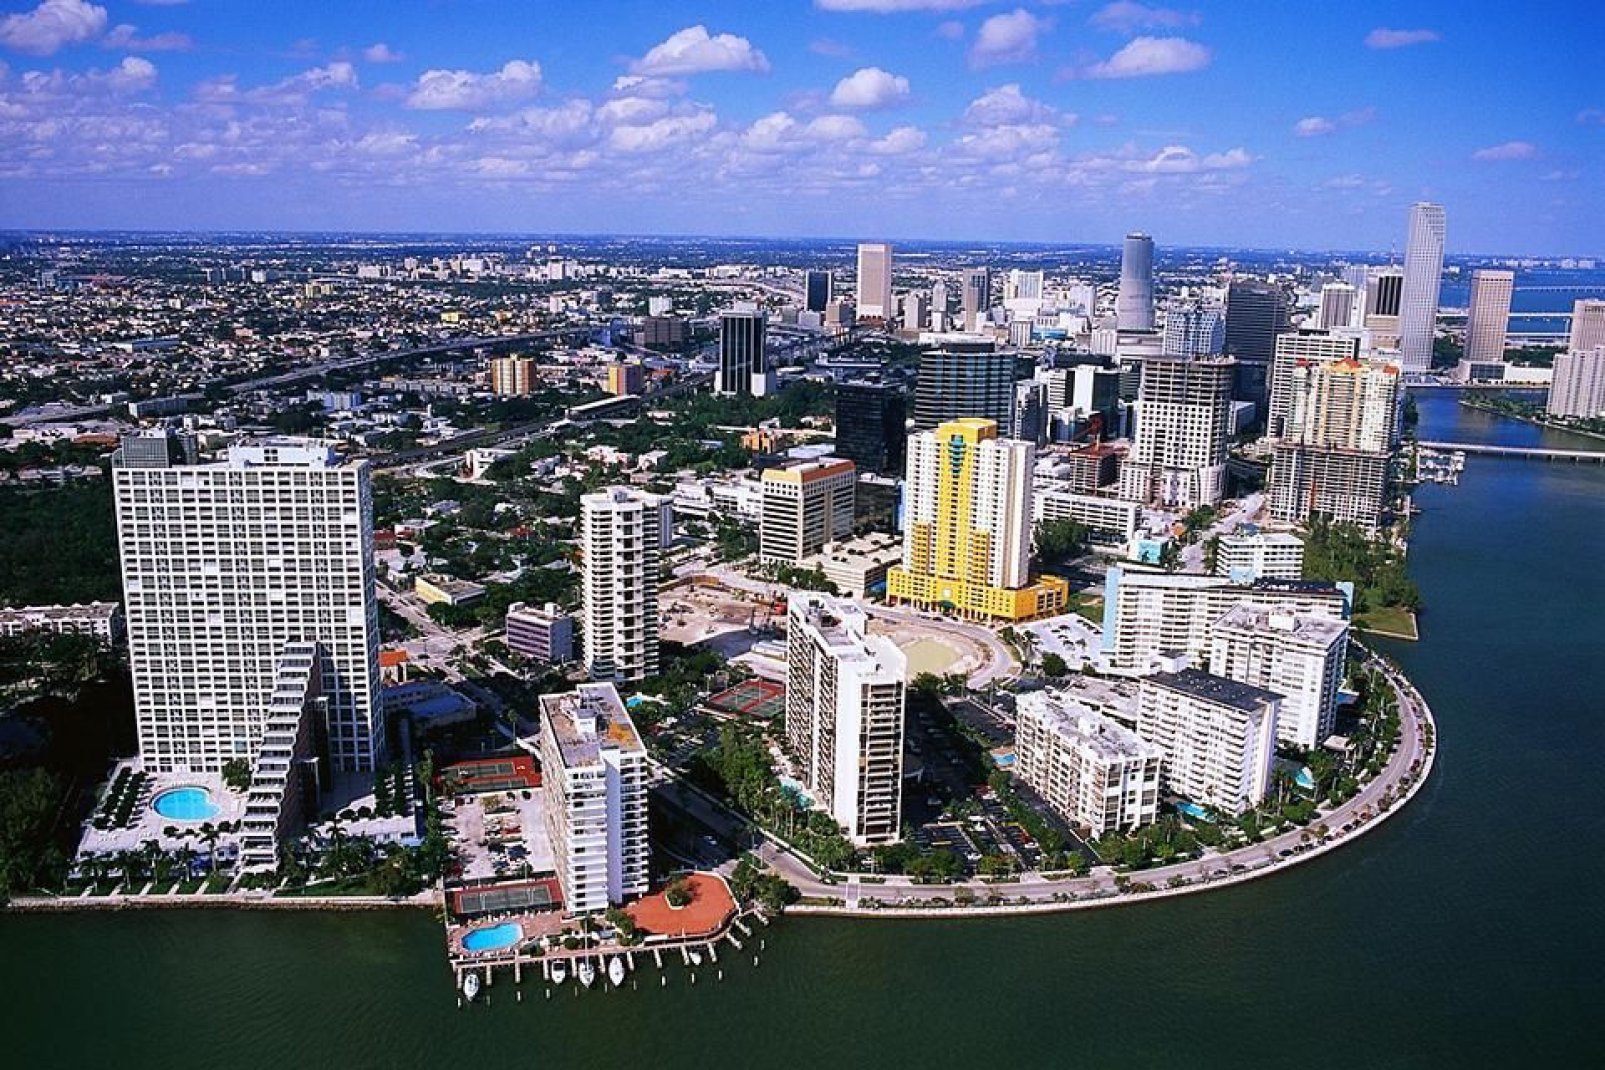 Die Stadt Miami wird aufgrund ihres regen wirtschaftlichen, kulturellen und sprachlichen Lebens auch als Tor zu Amerika bezeichnet.